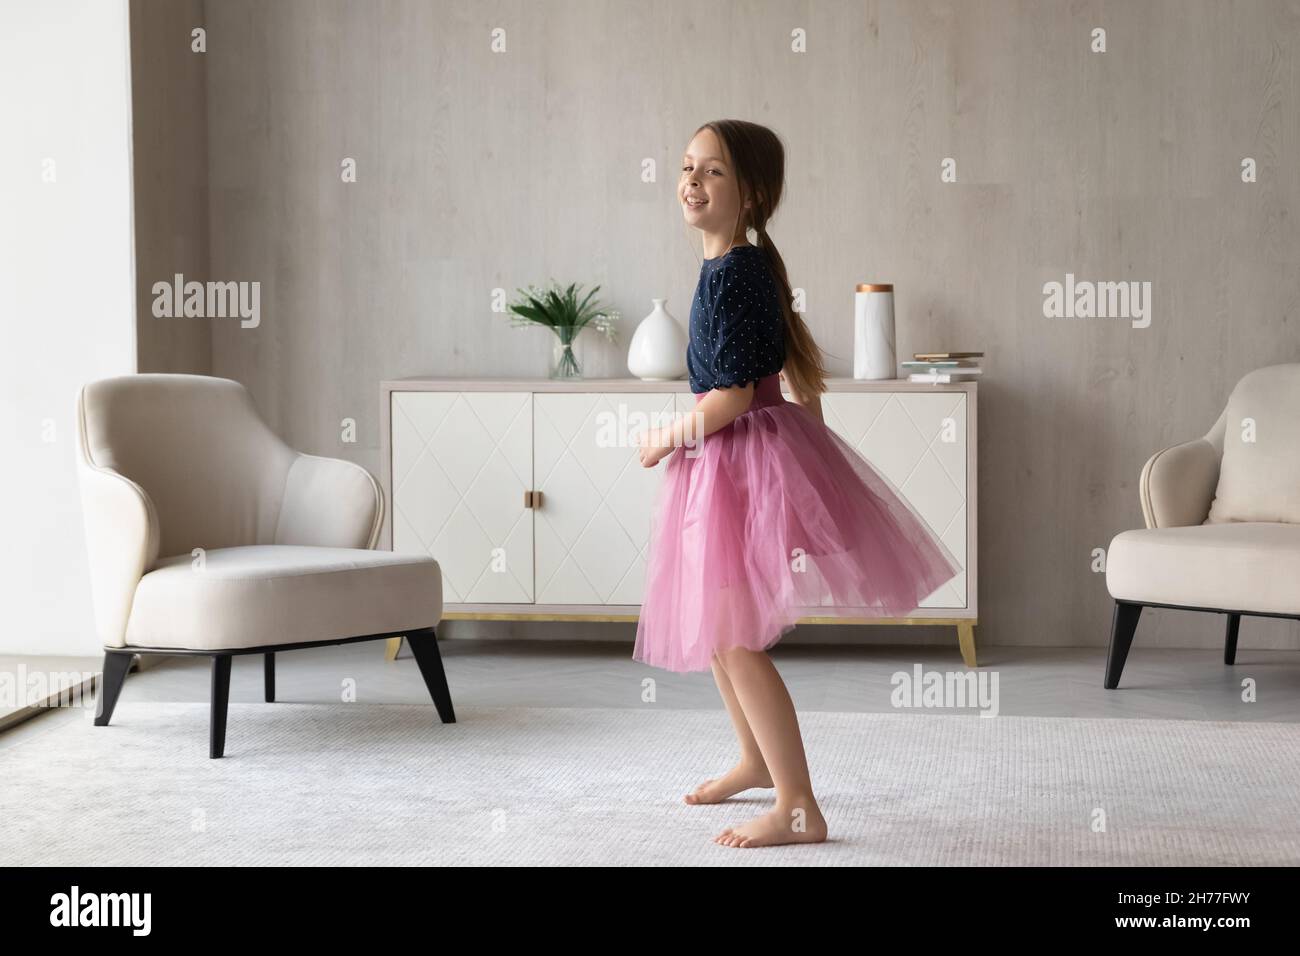 Kleines Mädchen in rosa flauschigen Rock im Wohnzimmer stehen Stockfoto